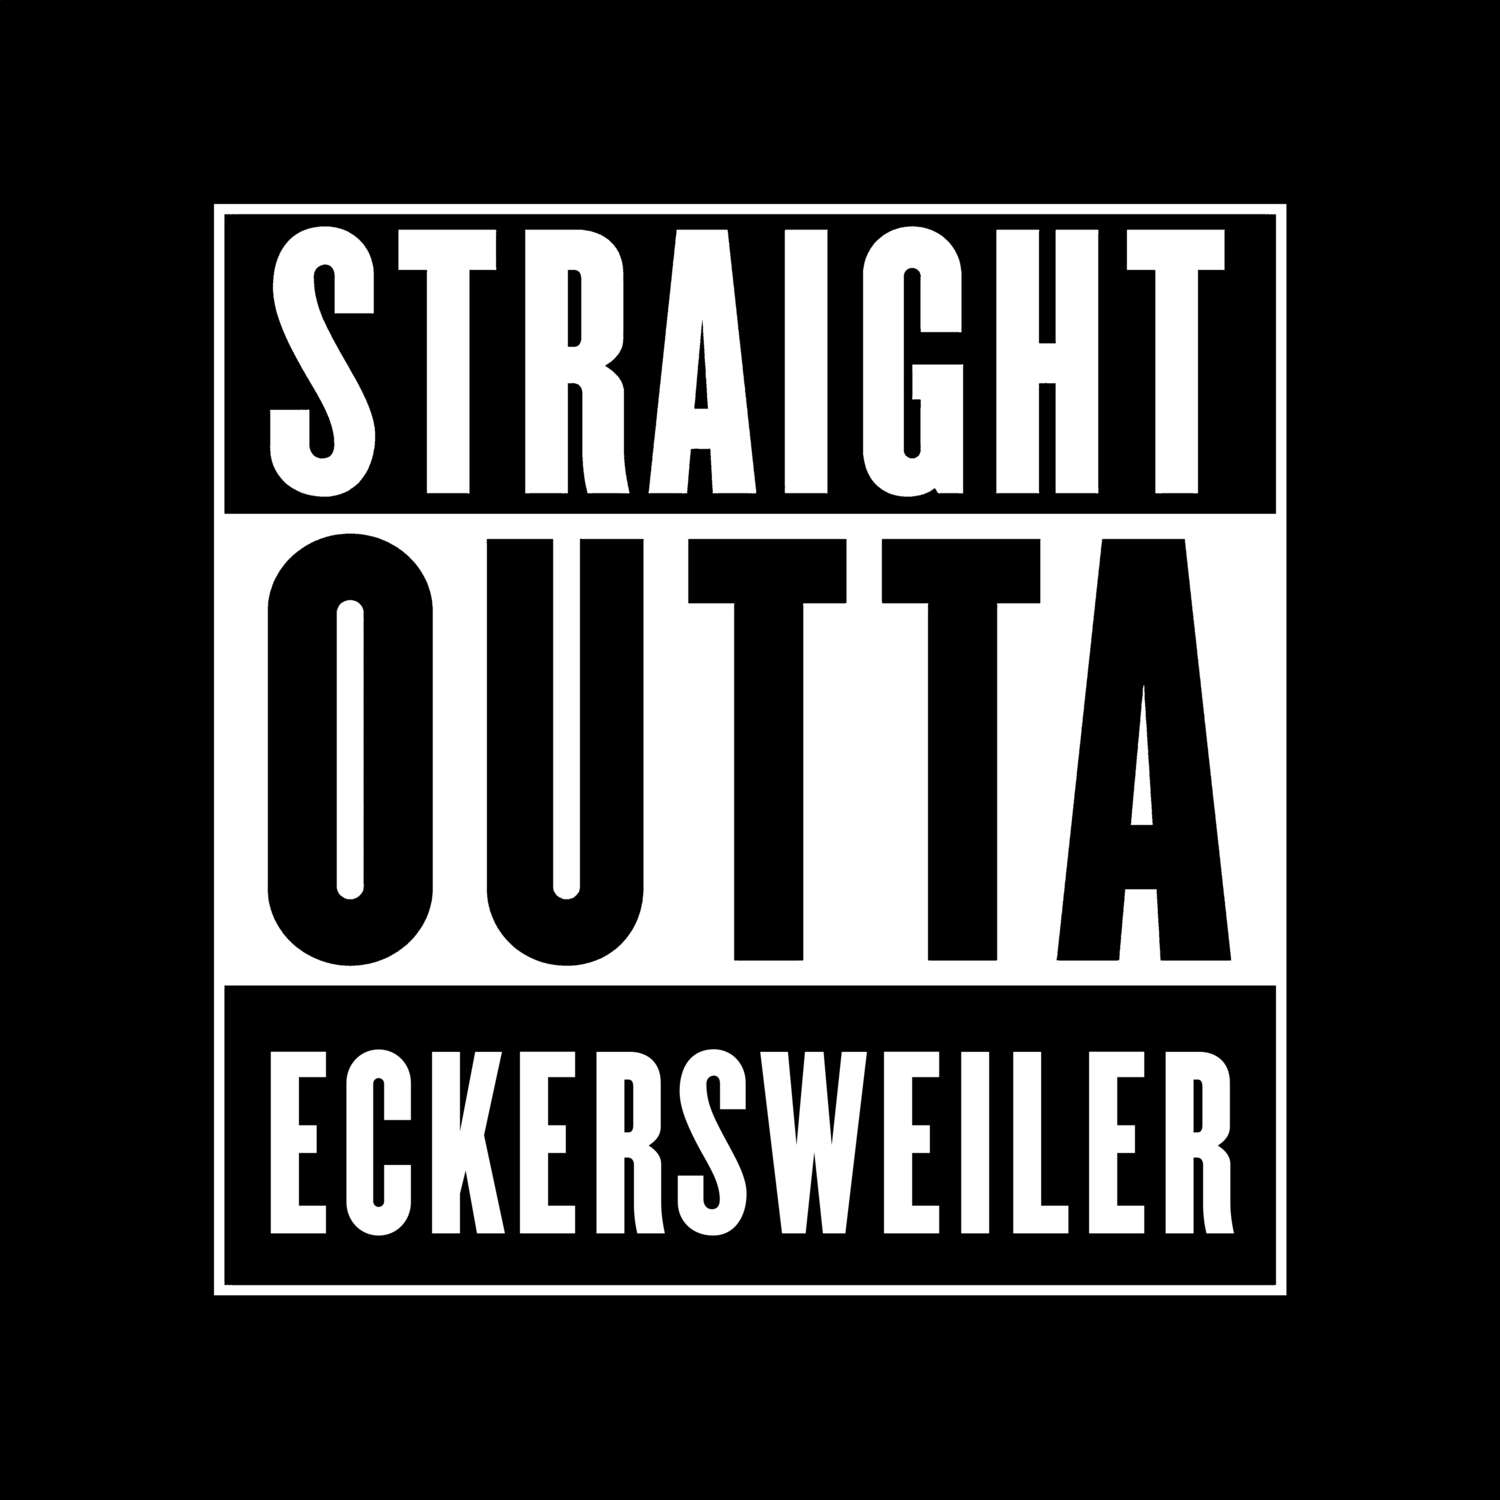 Eckersweiler T-Shirt »Straight Outta«